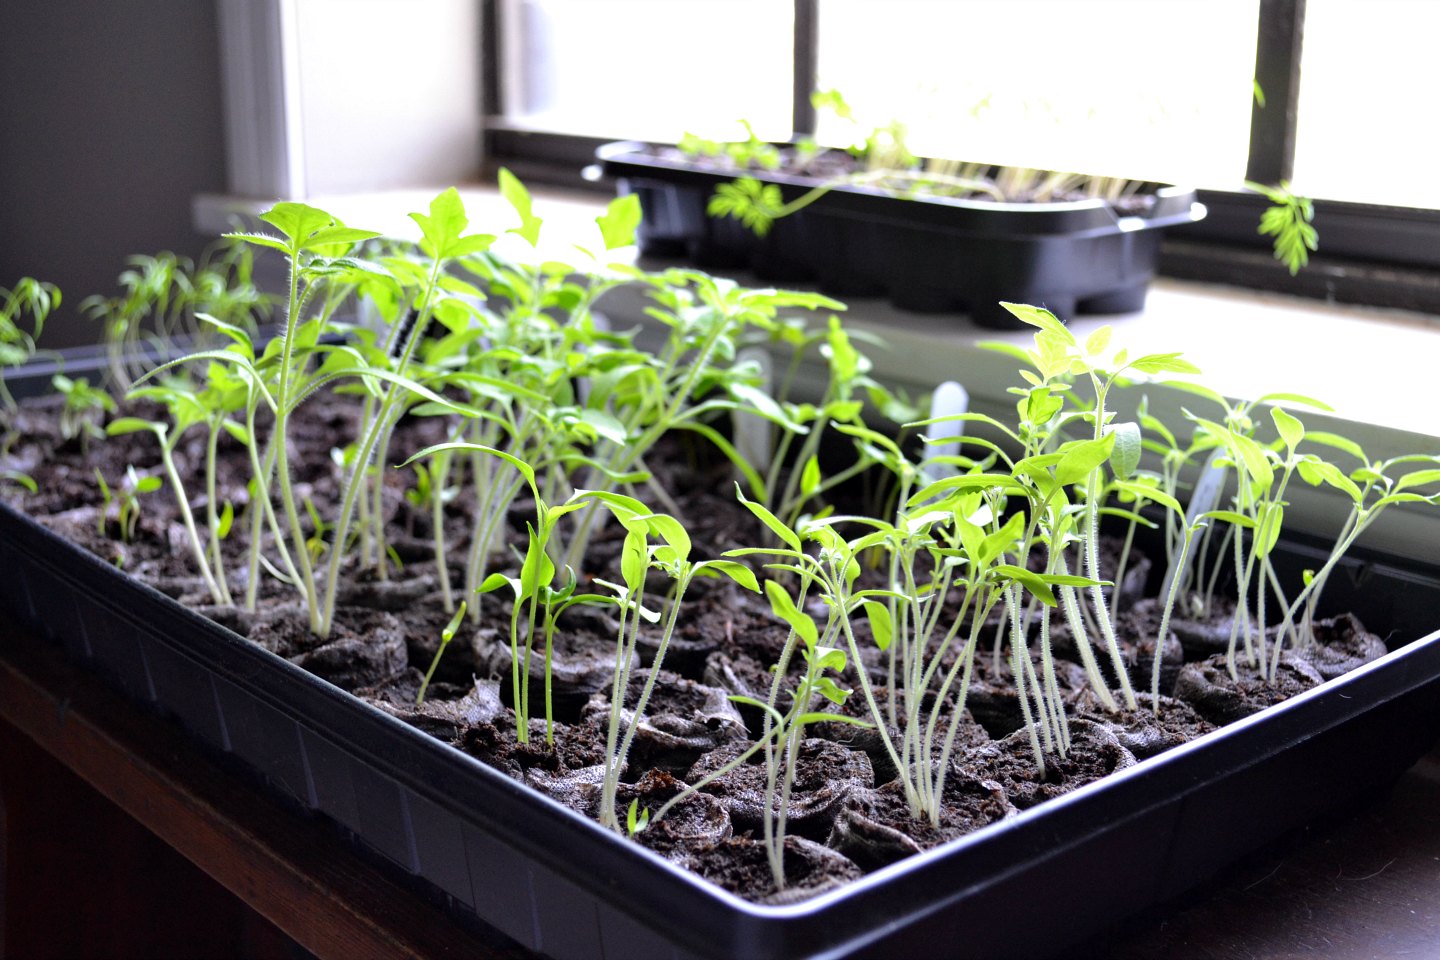 Seedlings in front of window